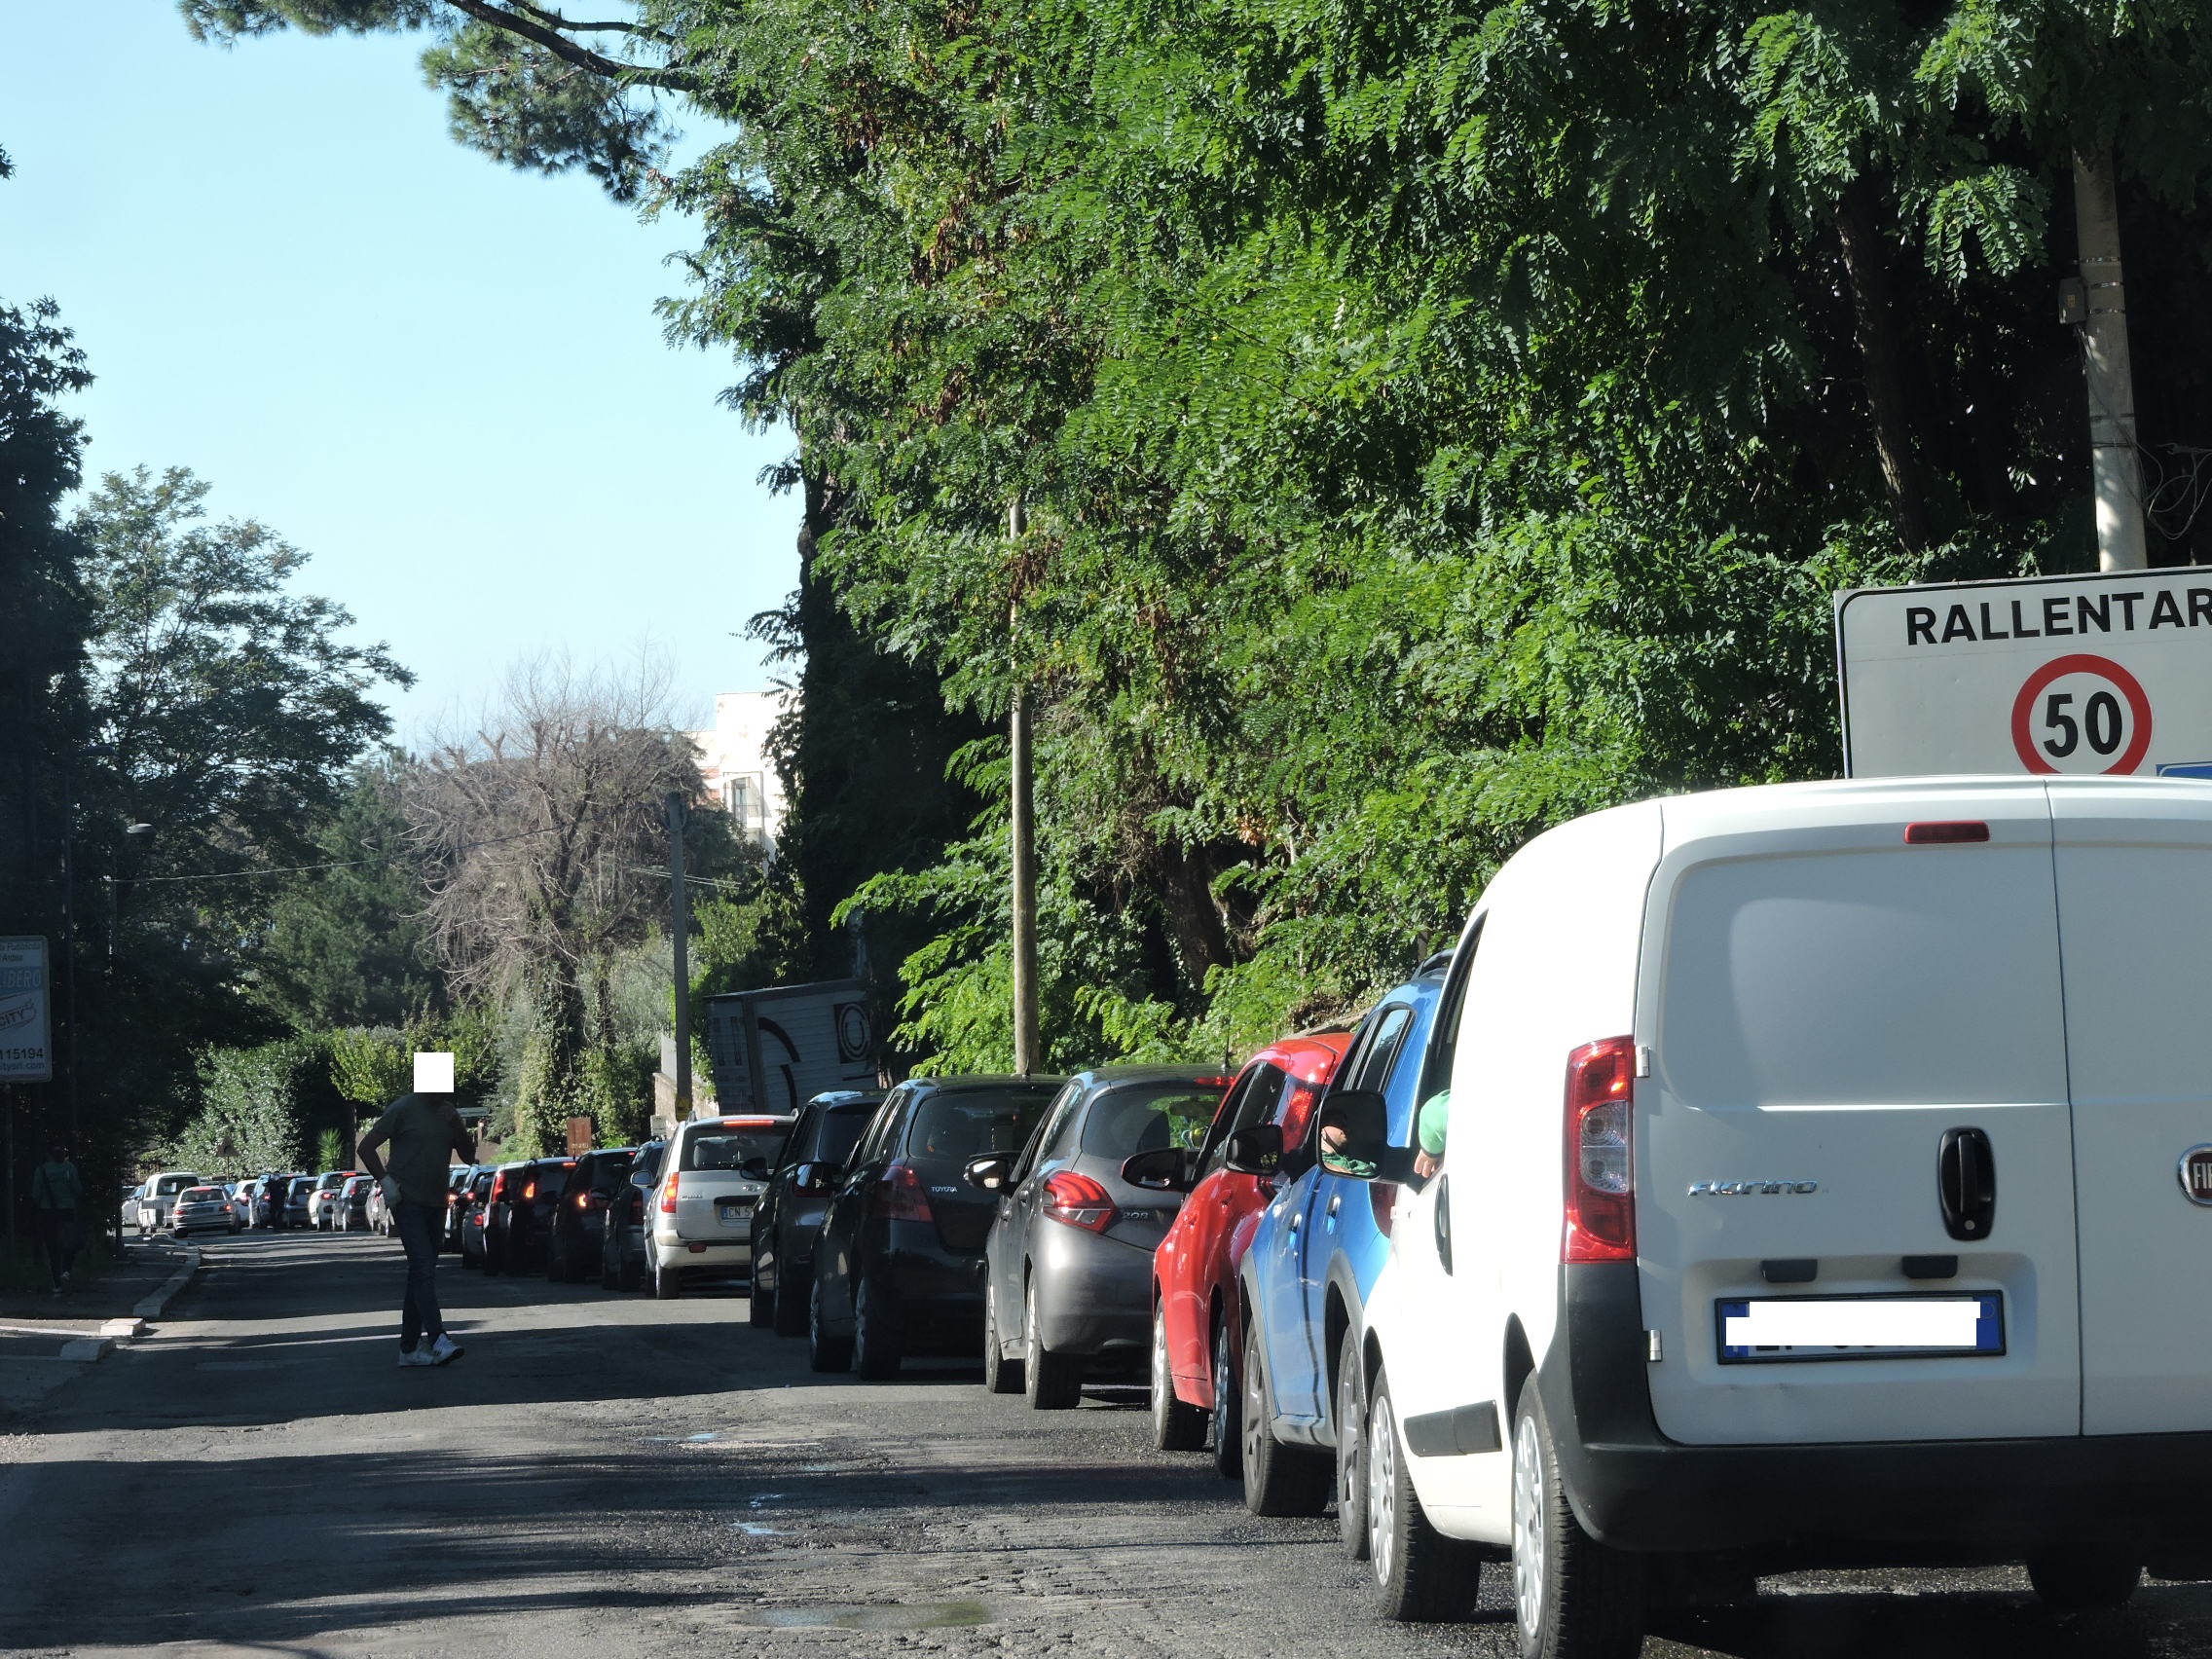 Caos tamponi con code chilometriche al drive-in di Genzano. Urgono  soluzioni alternative da Asl